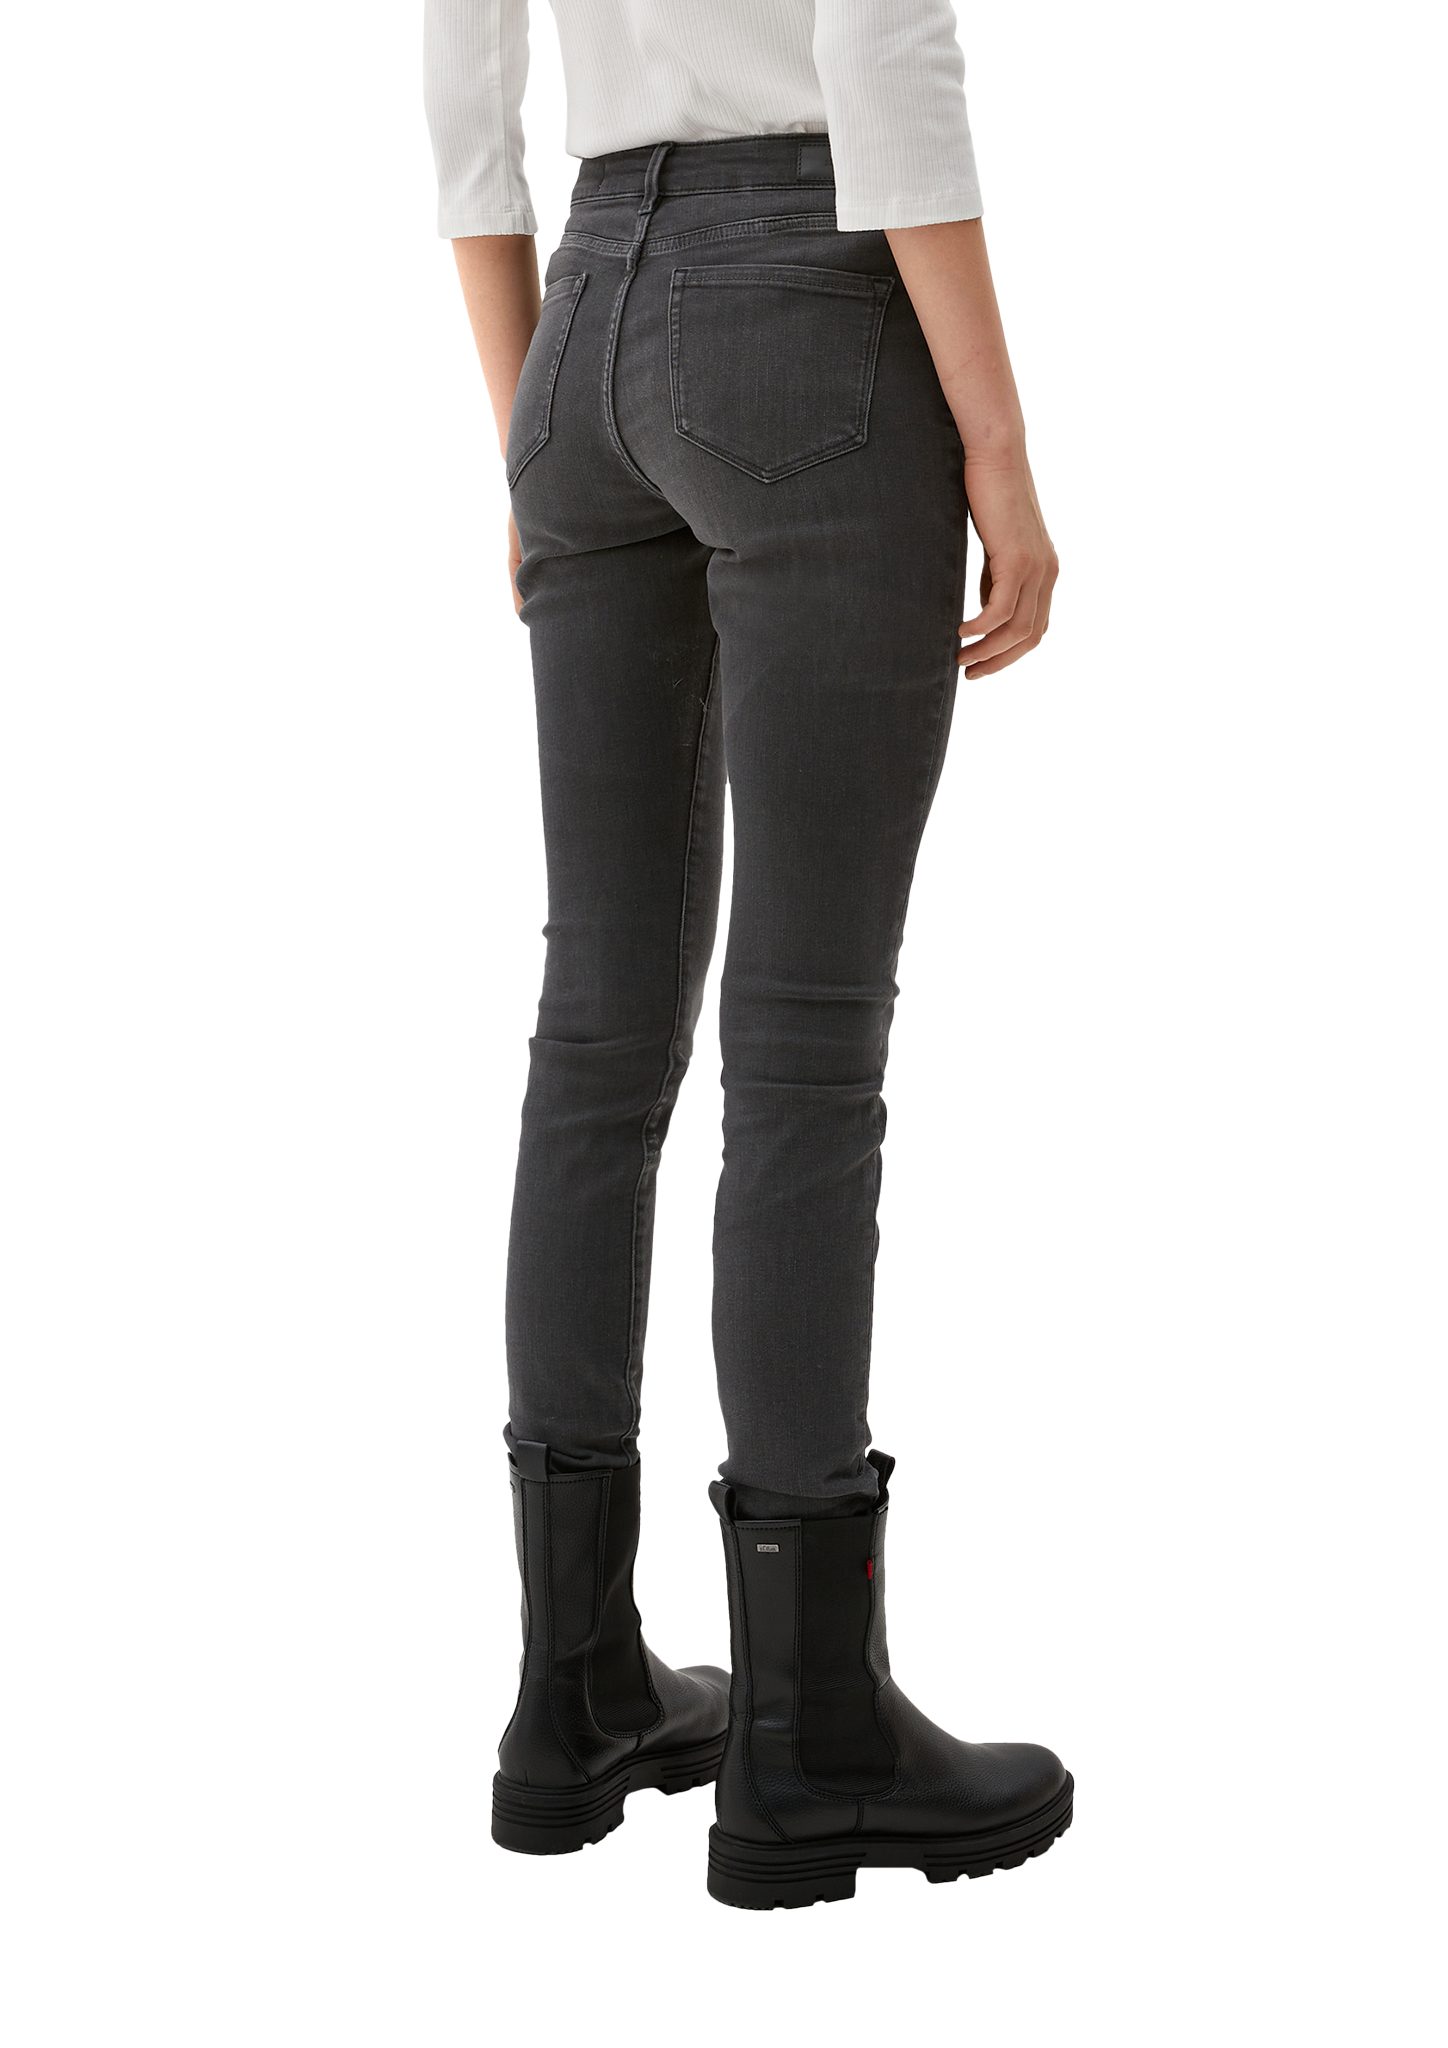 Mid Skinny / Jeans Skinny stretched s.Oliver 5-Pocket-Jeans Izabell / Rise grey Fit / Leg den